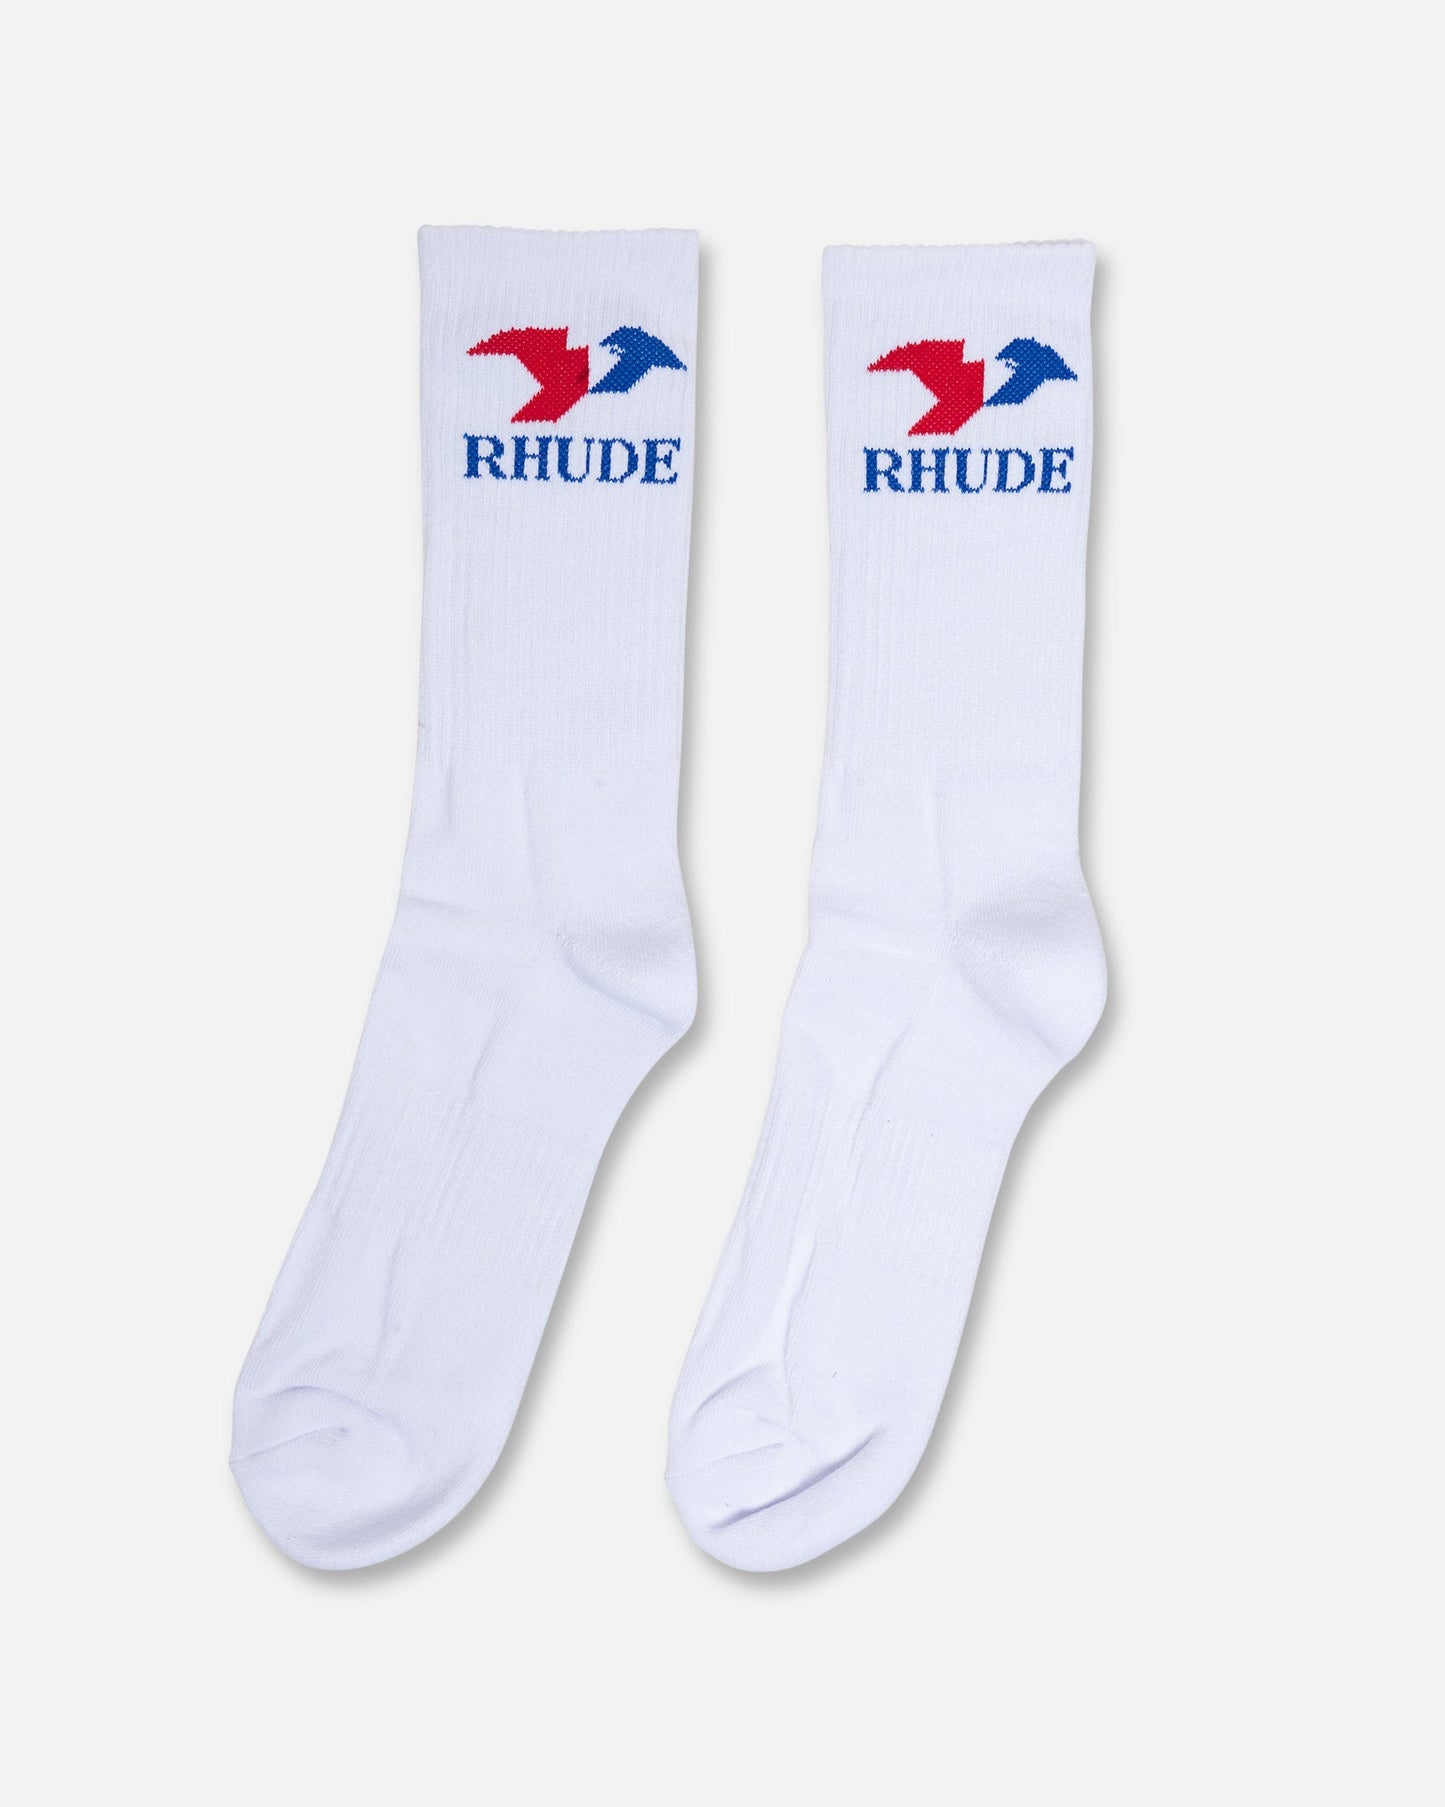 Rhude Men's Socks Eagle Sock in Red/White/Blue